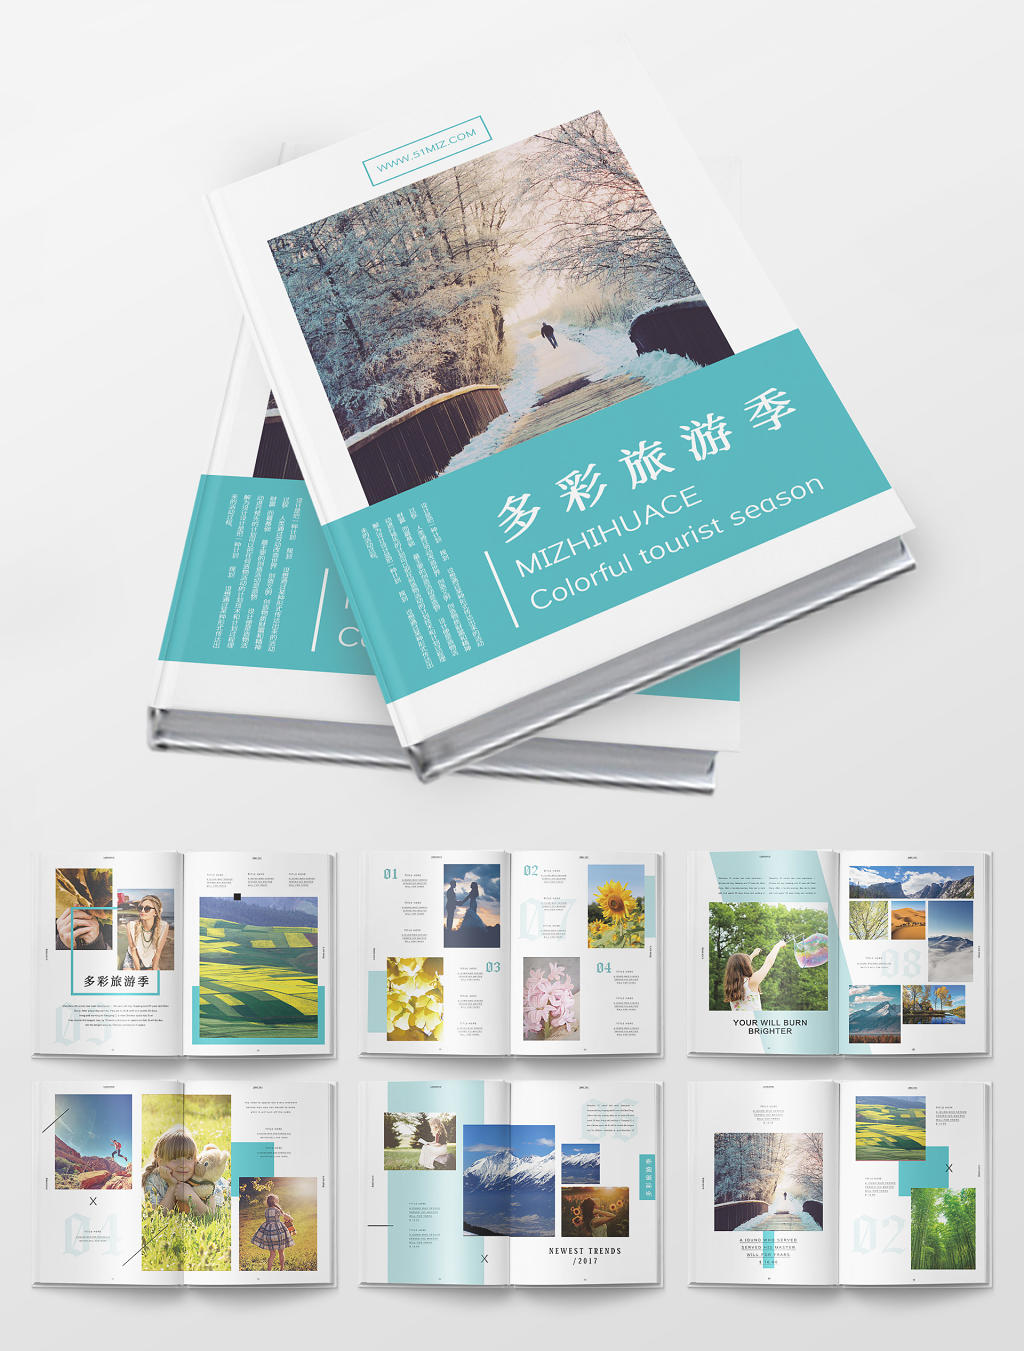 绿色清新简约时尚旅游纪念摄影集画册排版设计